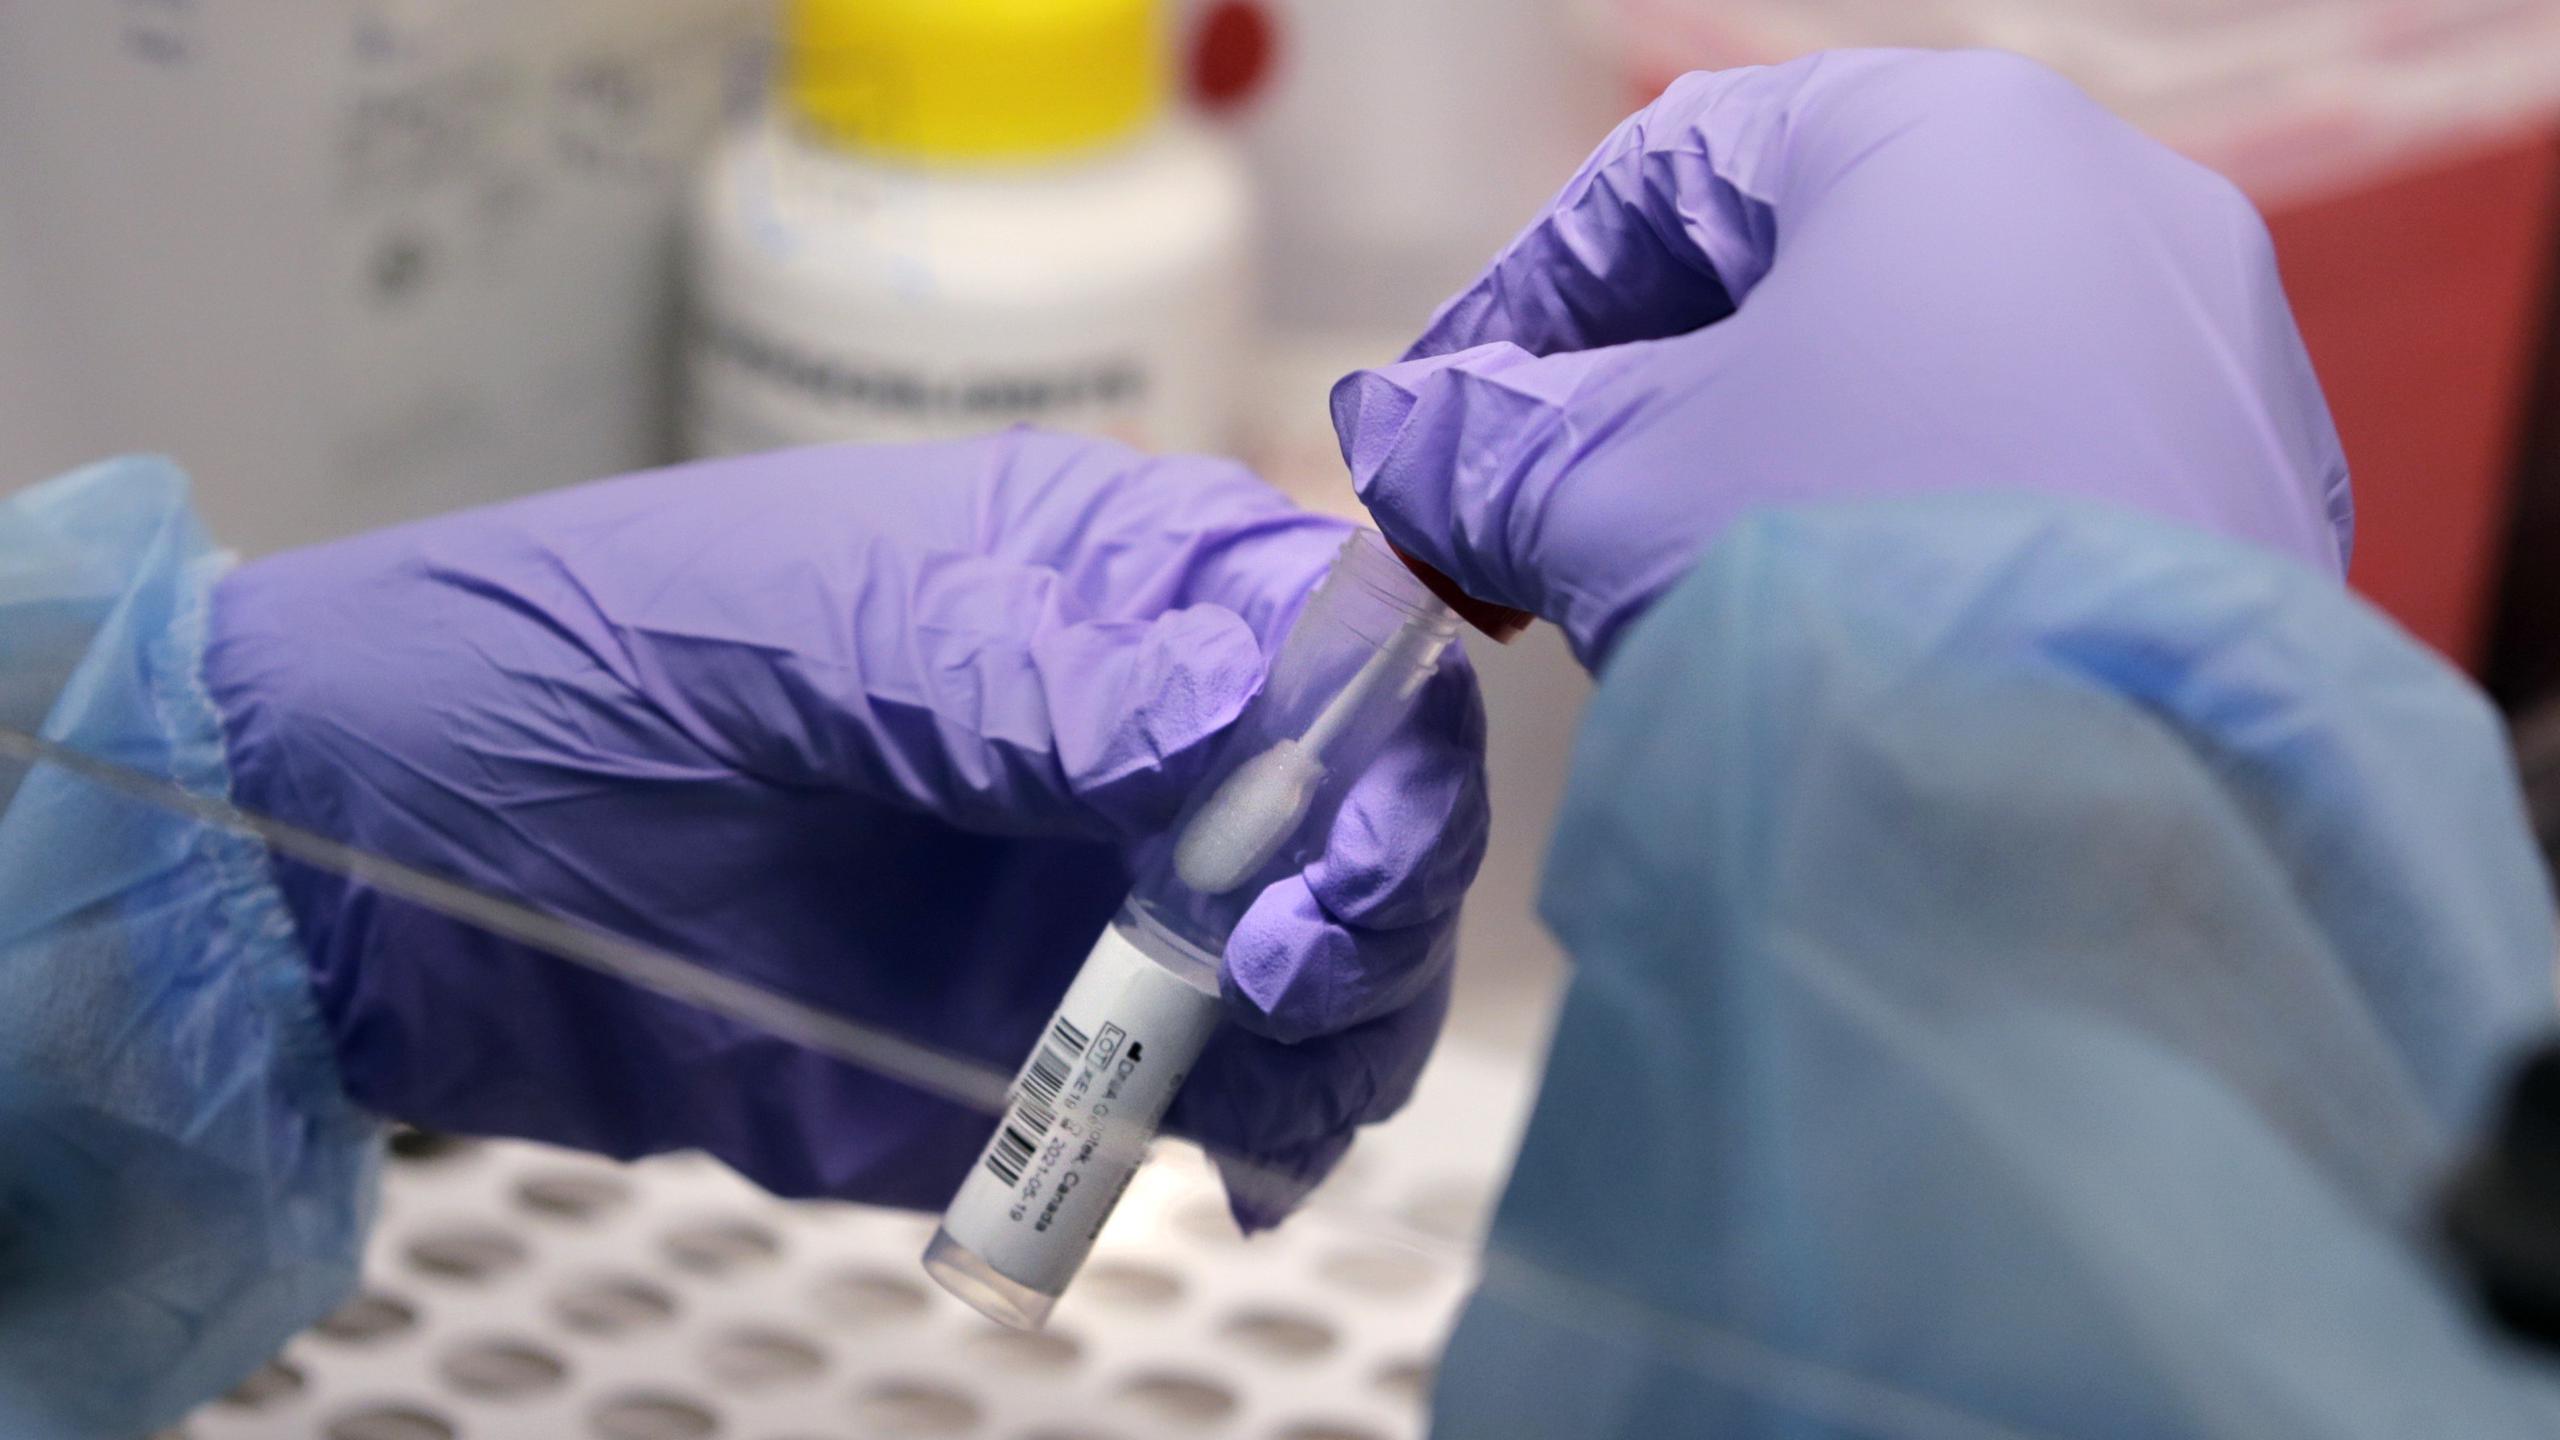 James Robson, estudiante de maestría en ingeniería biomédica, sostiene un hisopo y un vial relacionado con el nuevo coronavirus, en un laboratorio de pruebas en la Universidad de Boston, en Boston